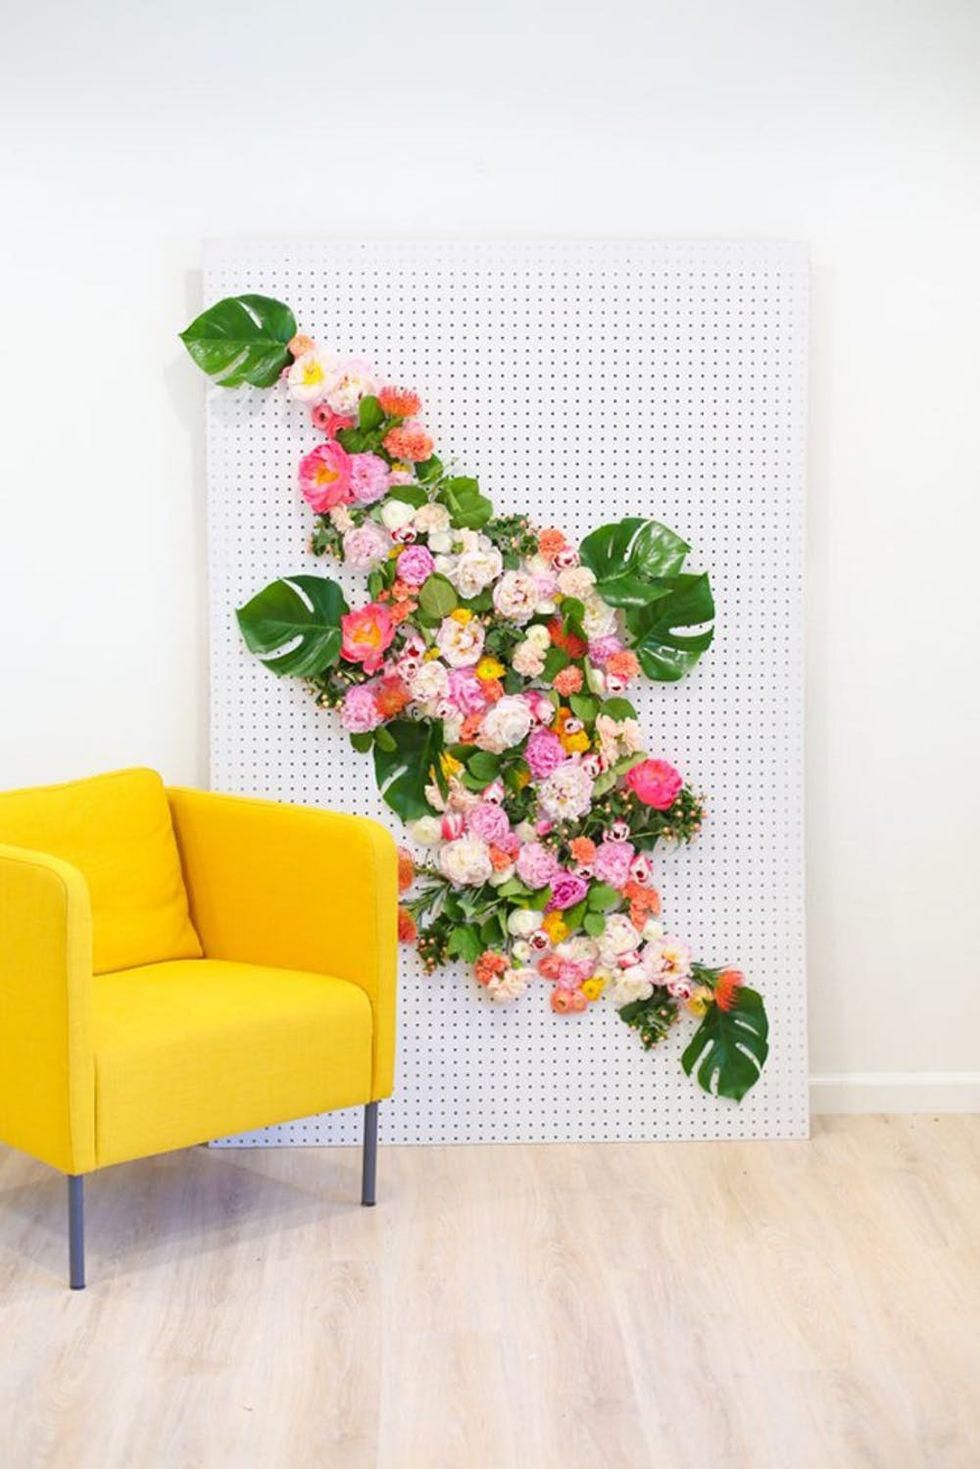 DIY Floral Photo Backdrop